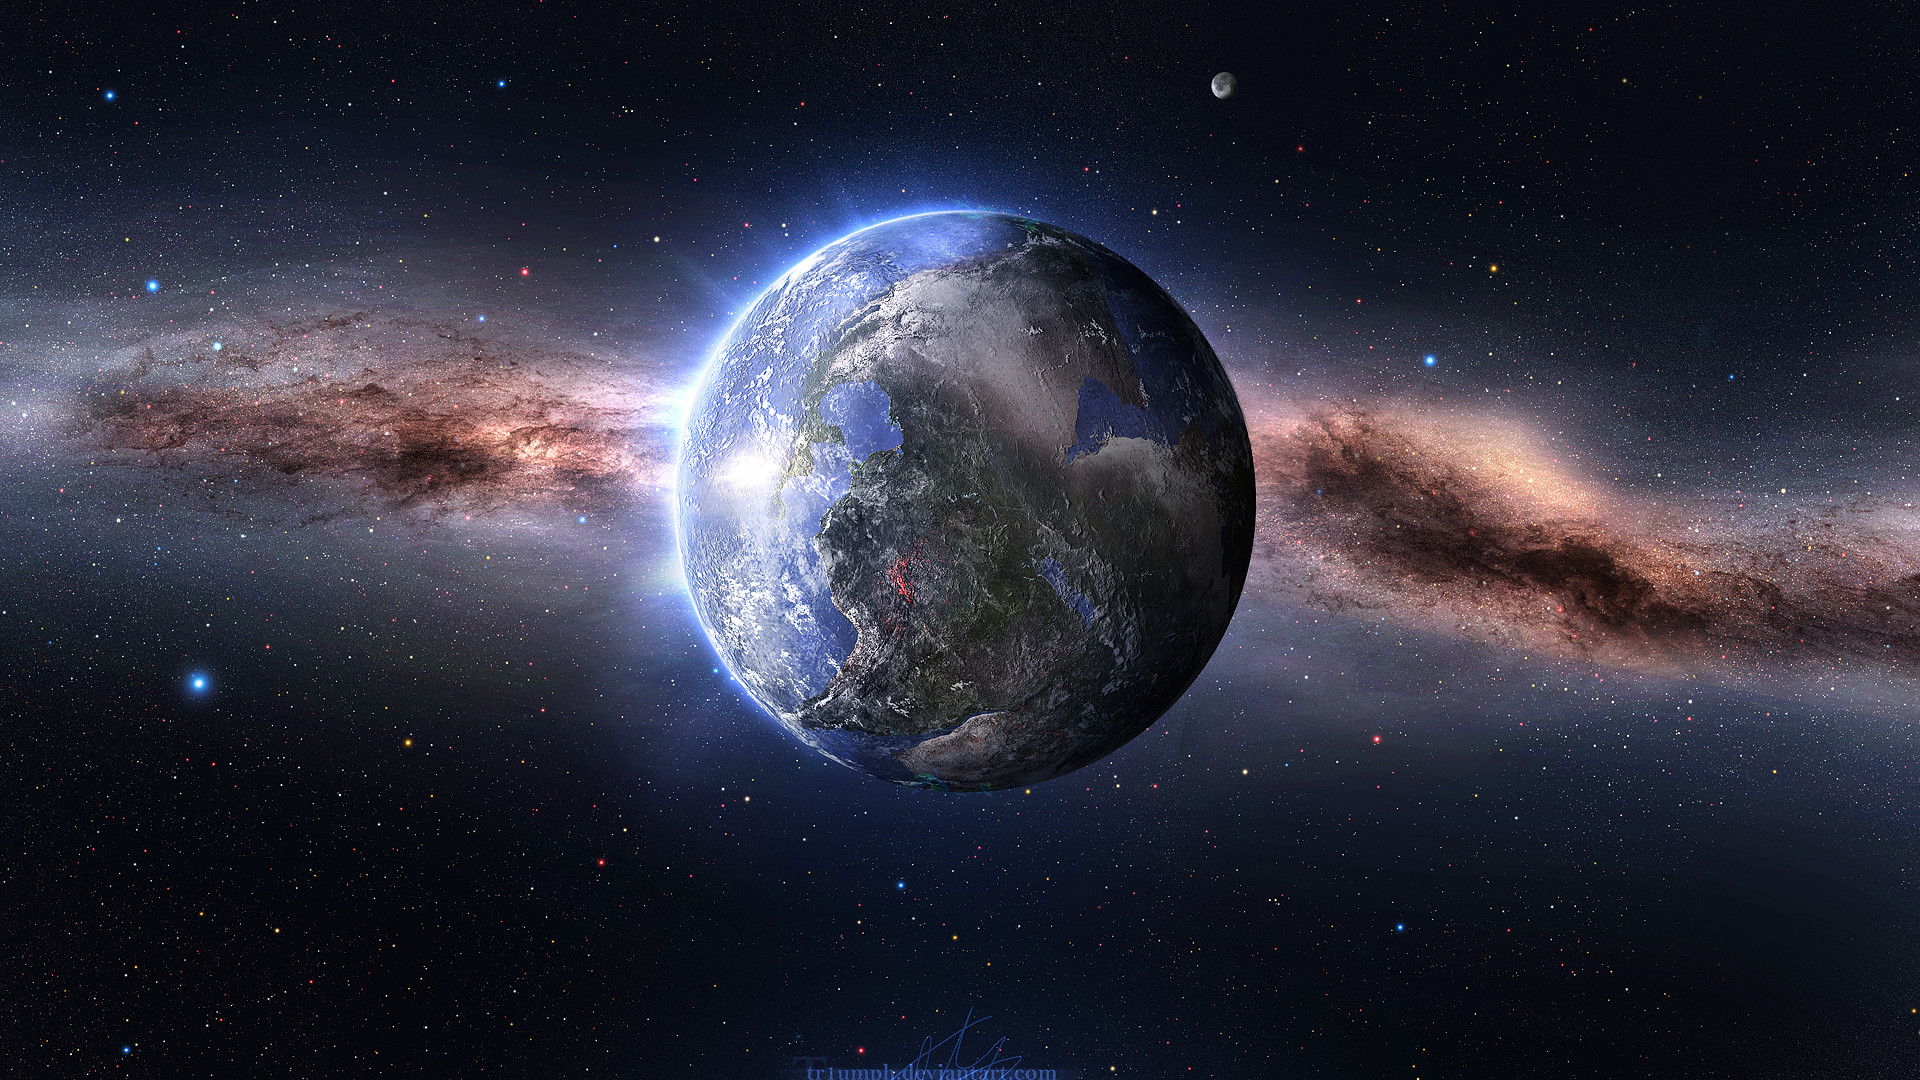 pianeta wallpaper hd,spazio,atmosfera,pianeta,oggetto astronomico,universo